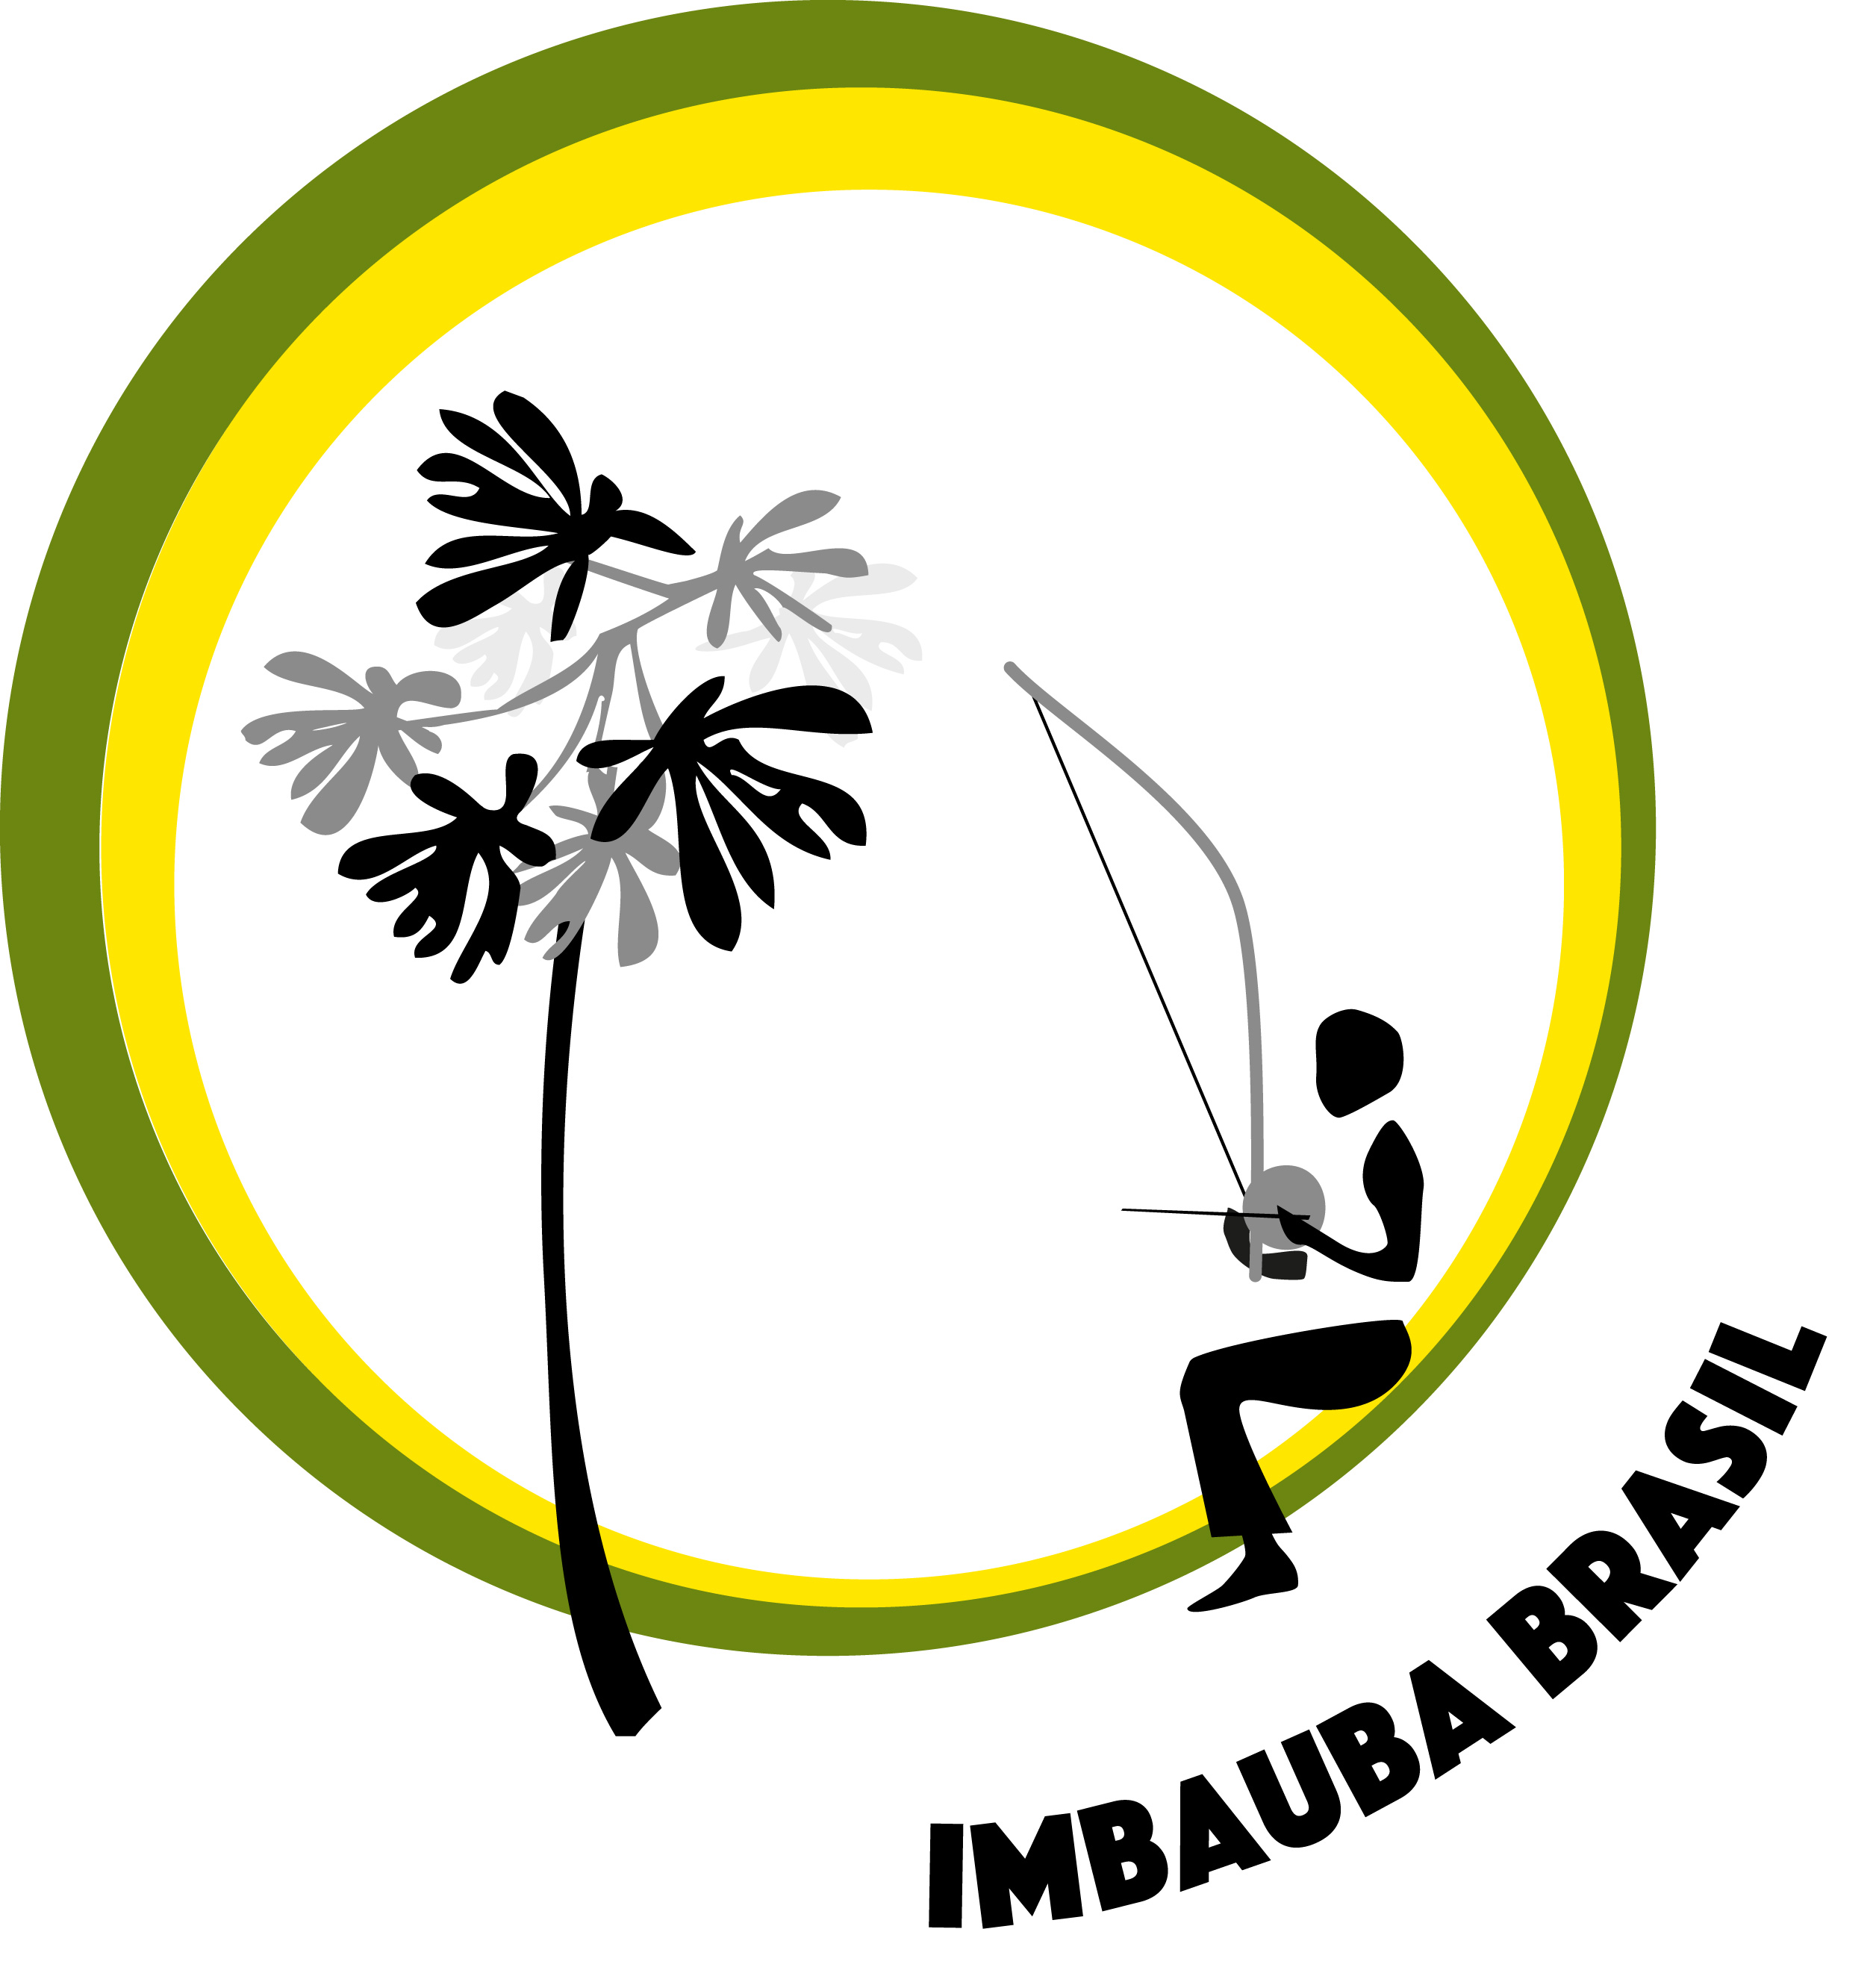 Association Imbauba Brasil